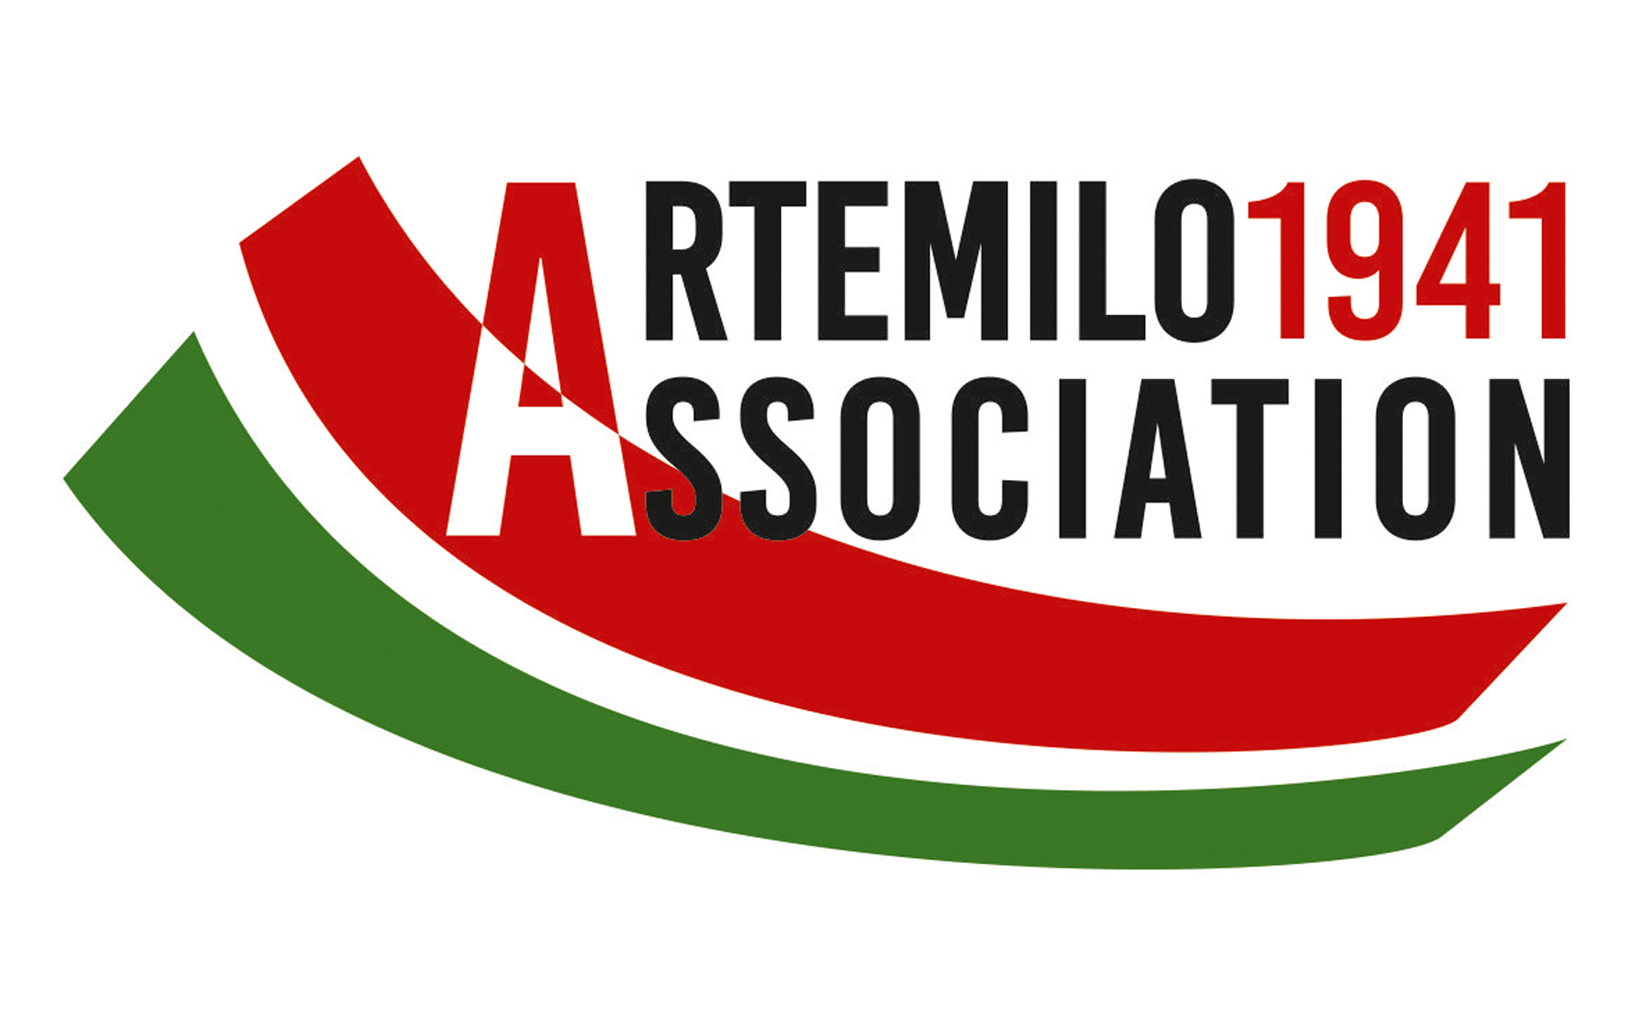 artemilo1941 association